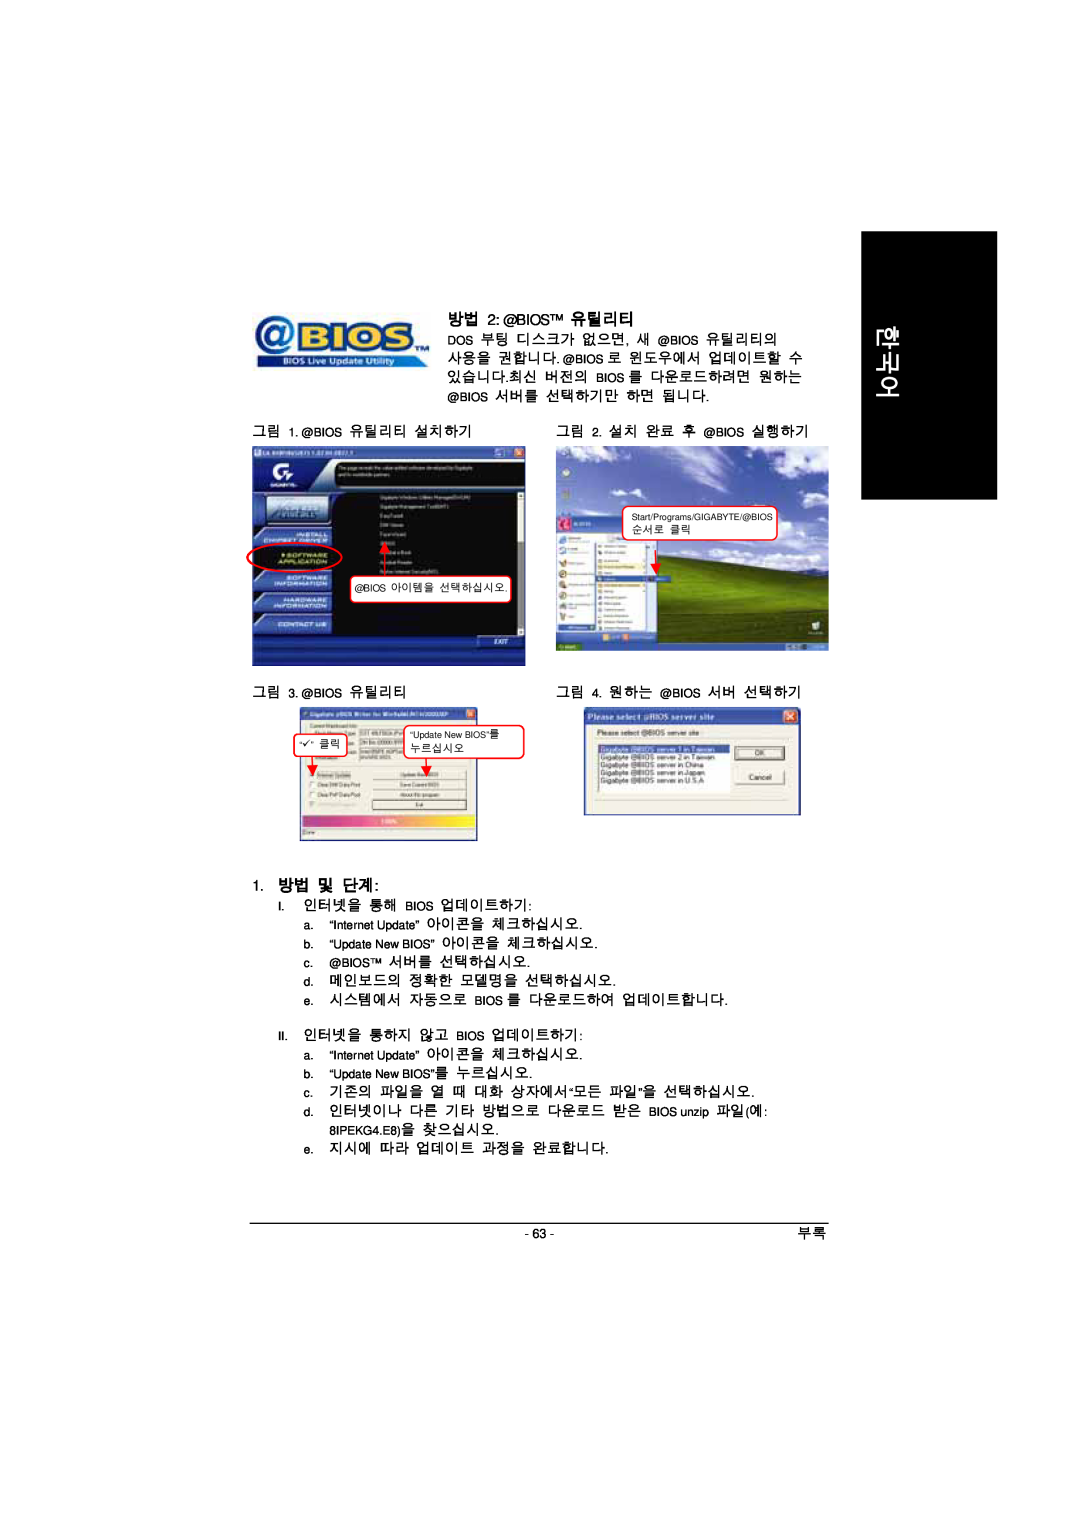 Intel GA-8IPE1000 manual 방법 2 @BIOS 유틸리티, 1. 방법 및 단계, 그림 3. @BIOS 유틸리티 